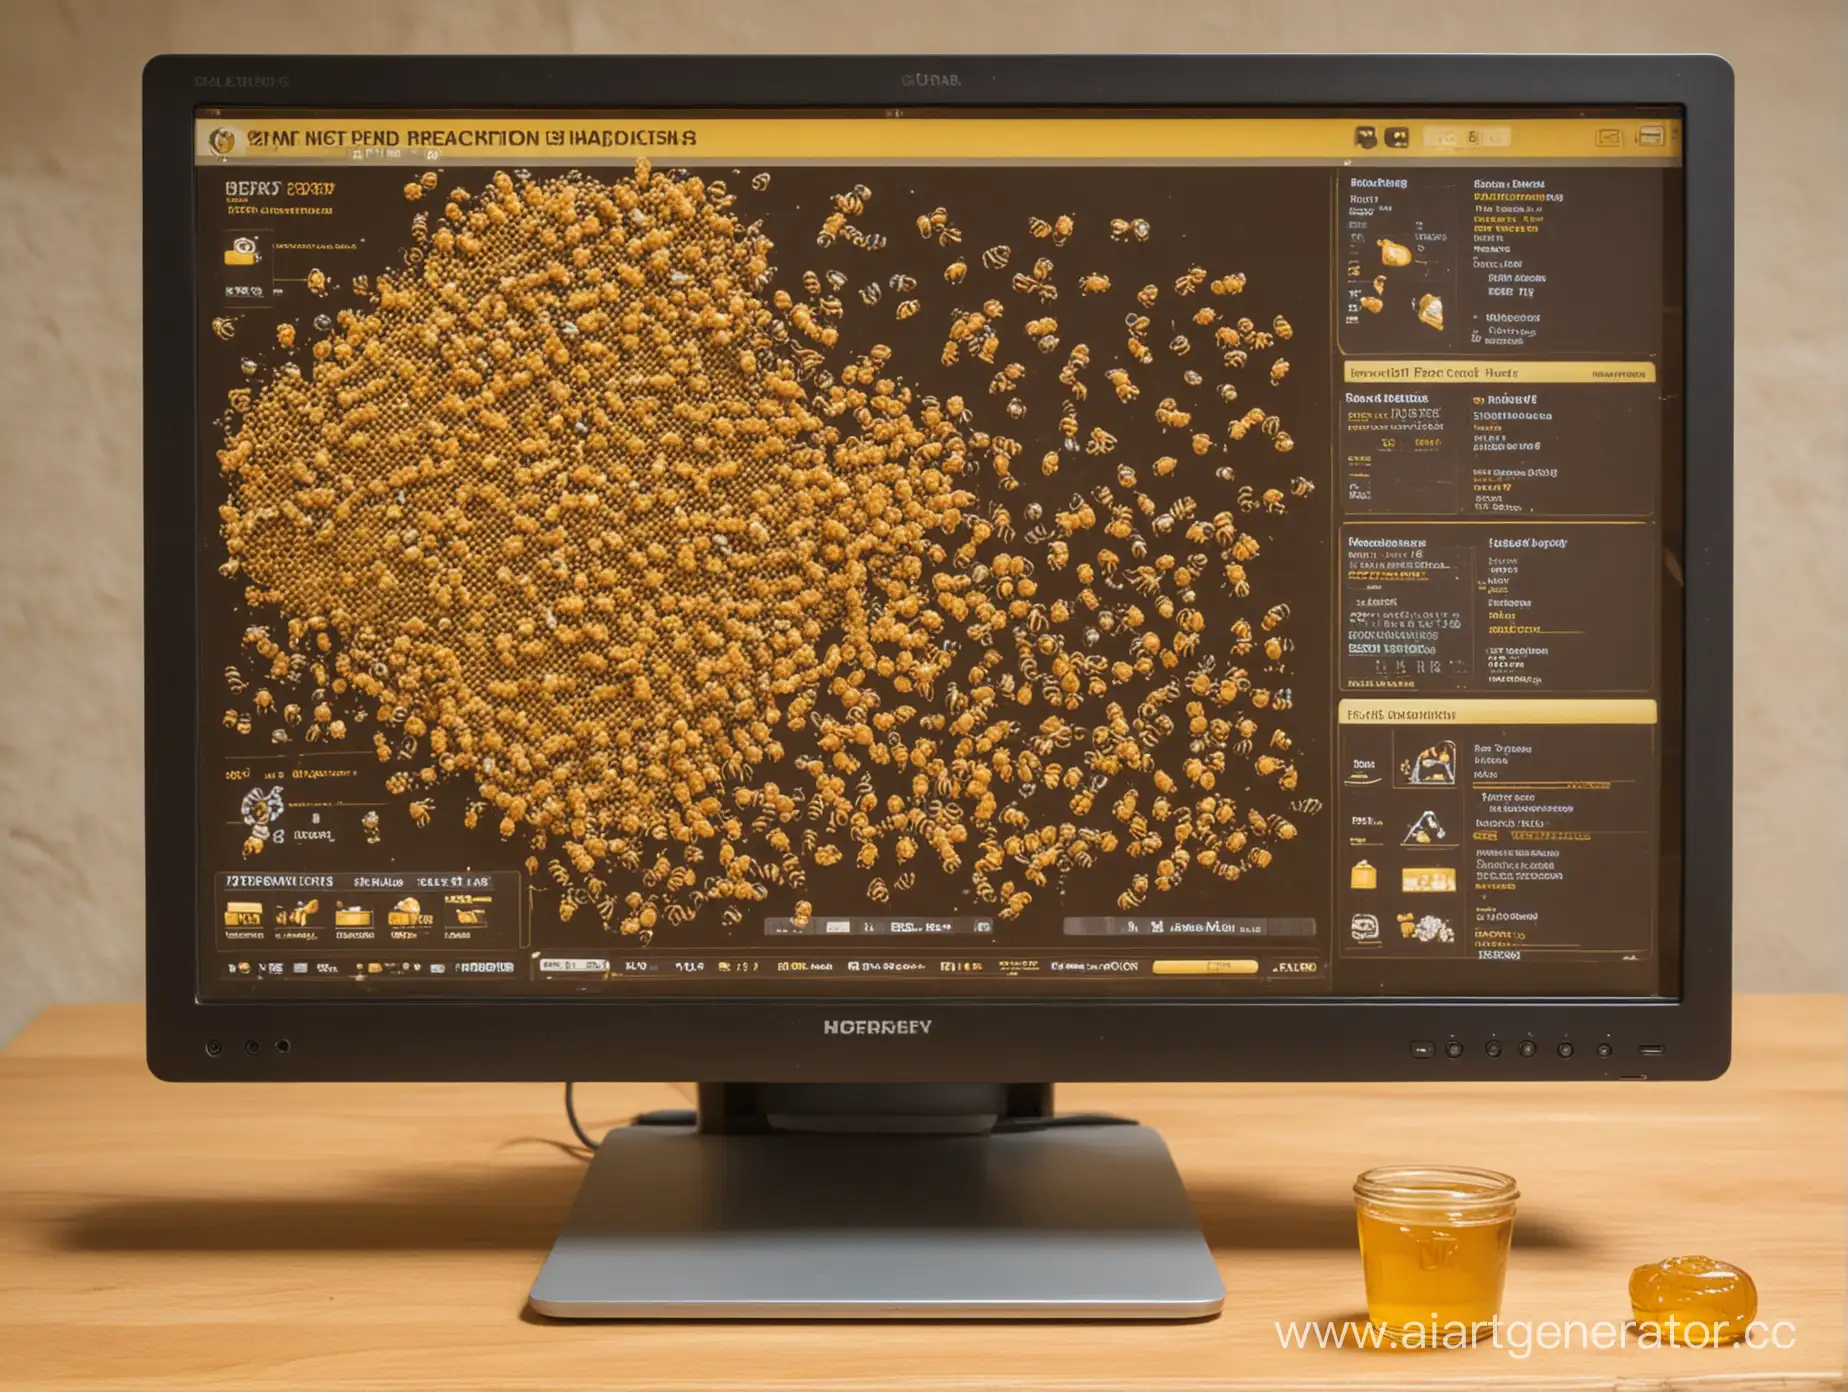 Монитор компьютера, на котором изображен процесс производства мёда.